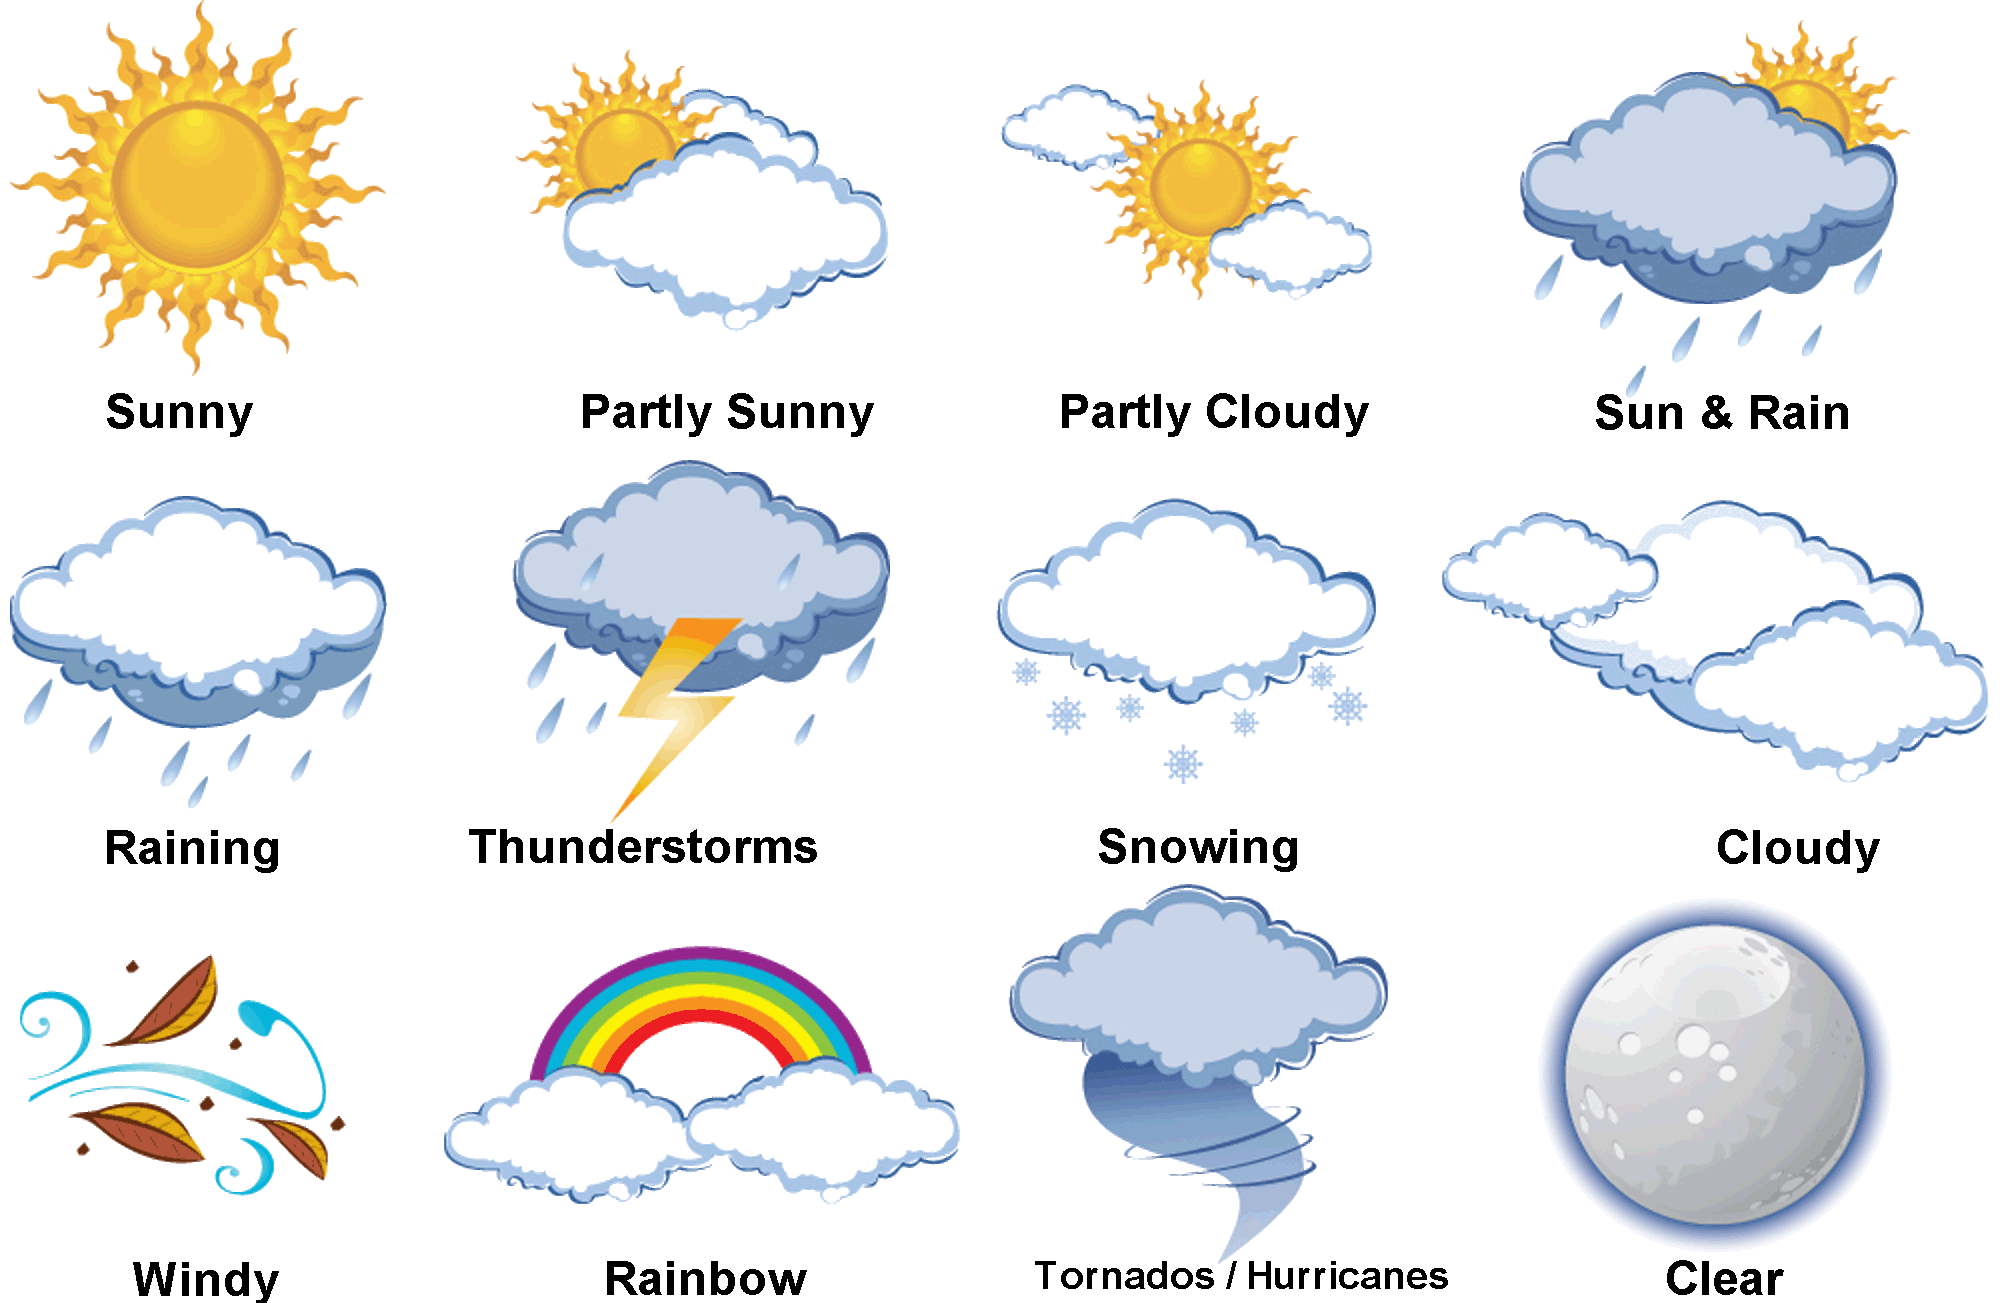 Weather англ. Погодные явления картинки для детей. Погода на английском языке. Gjujlf ZF fzukbqcrjv. Погода картинки на английском для детей.